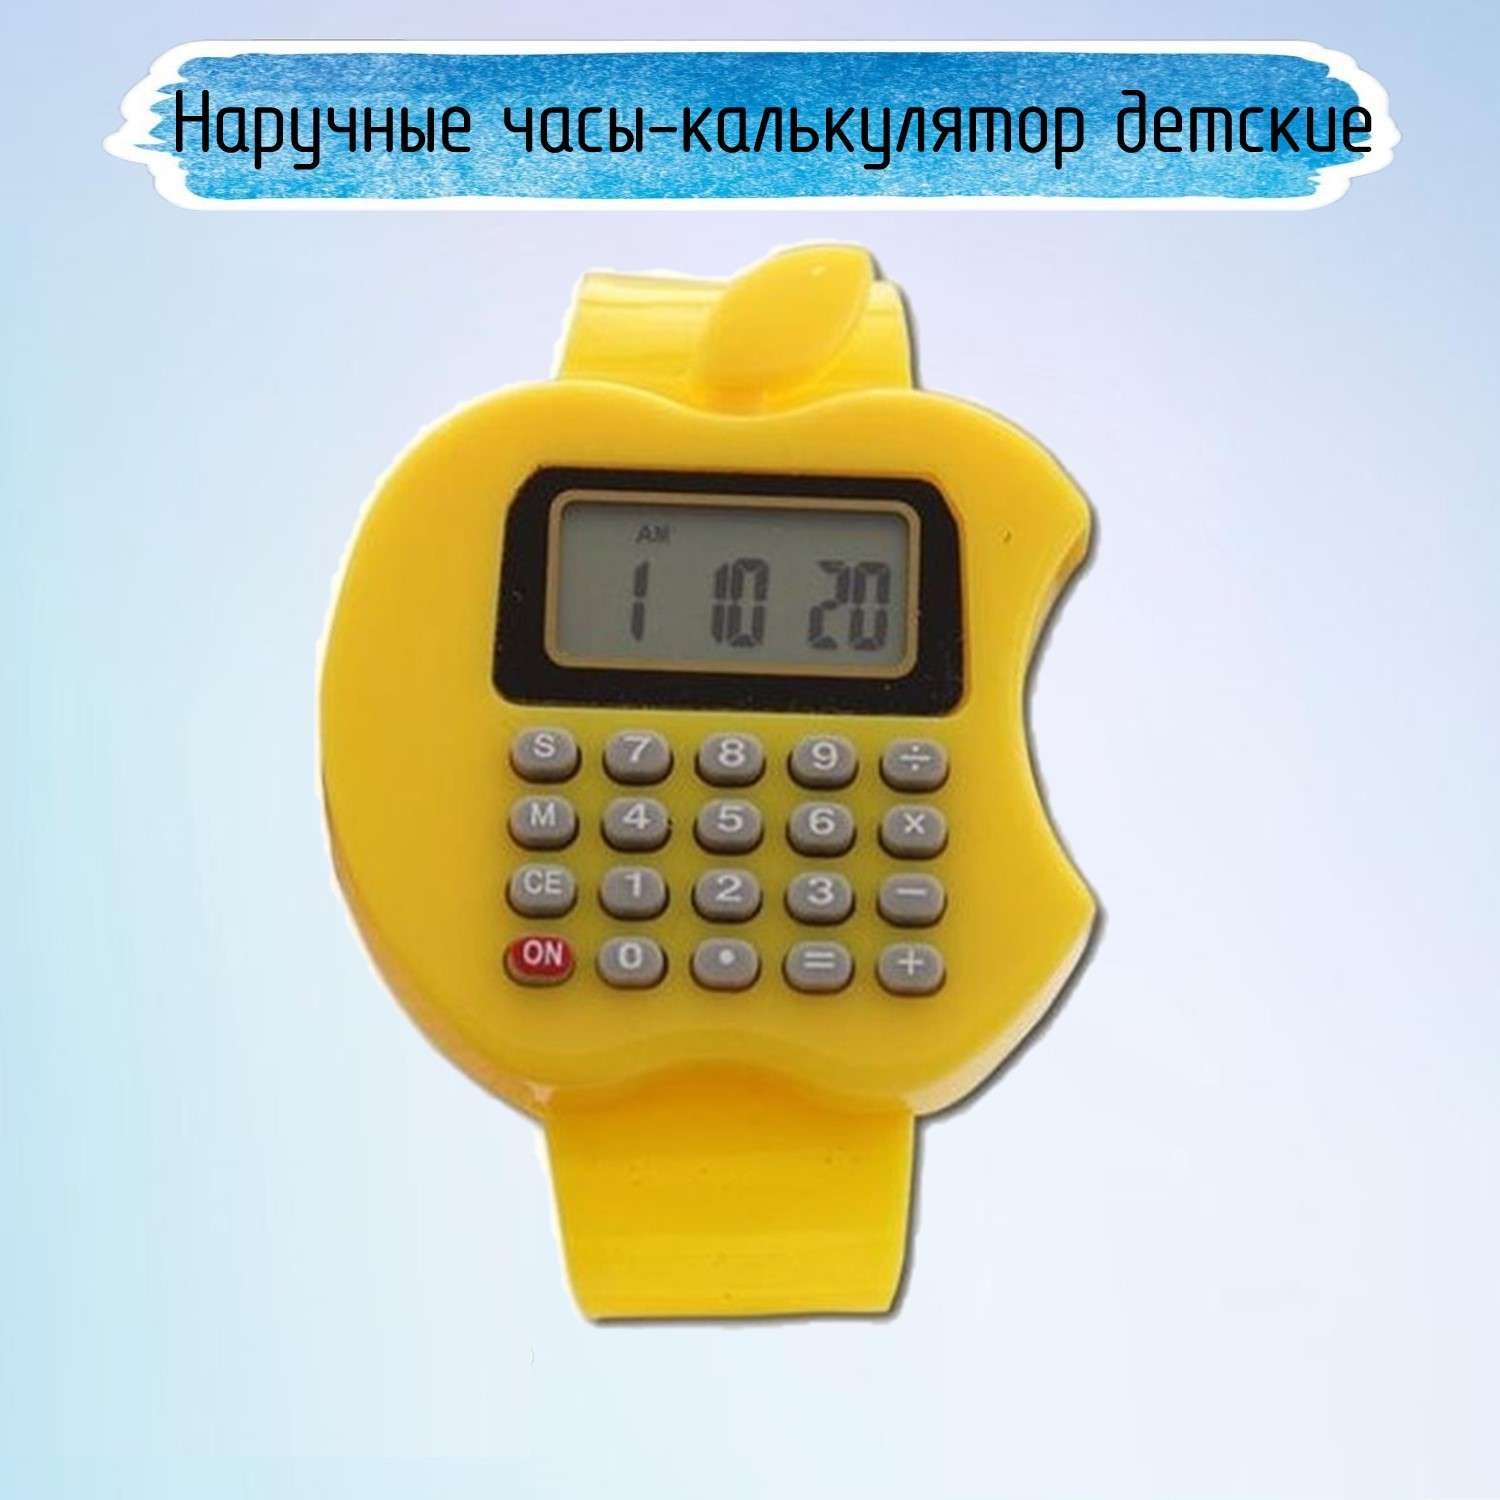 Наручные часы-калькулятор Uniglodis Детские. Яблоко желтое - фото 1